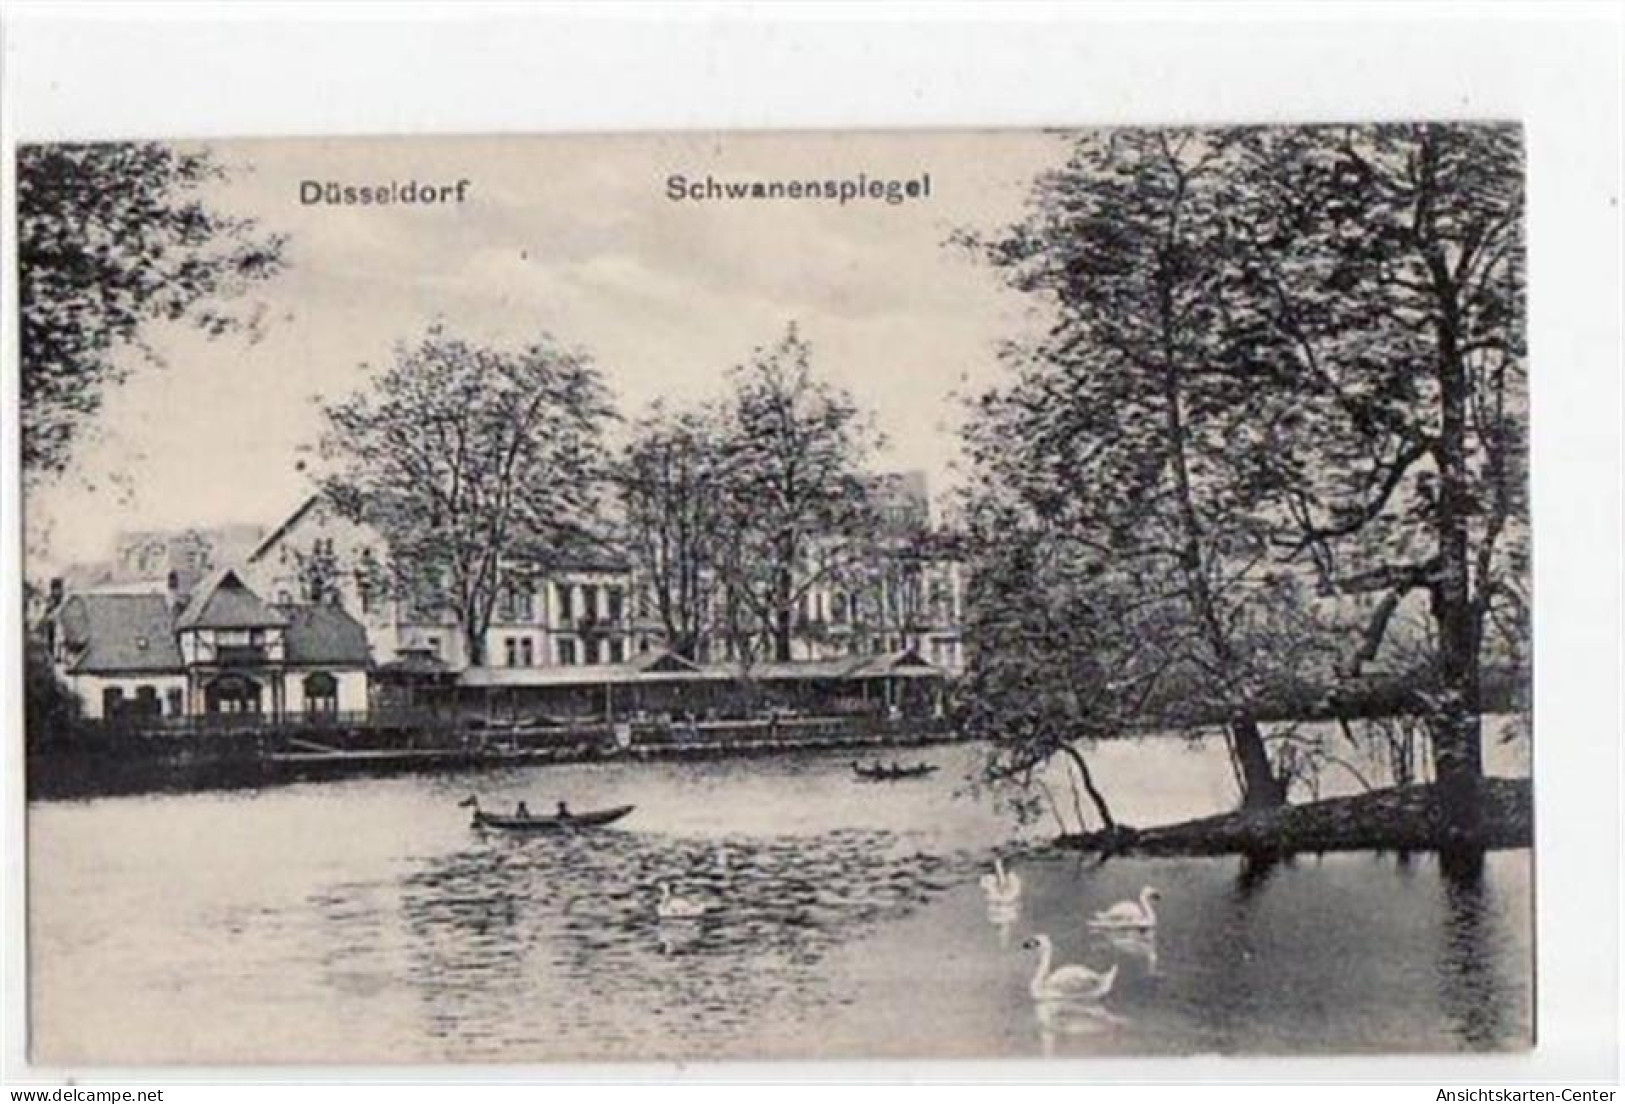 39059106 - Duesseldorf Mit Schwanenspiegel. Feldpost, Mit Stempel Von 1916. Gute Erhaltung. - Duesseldorf